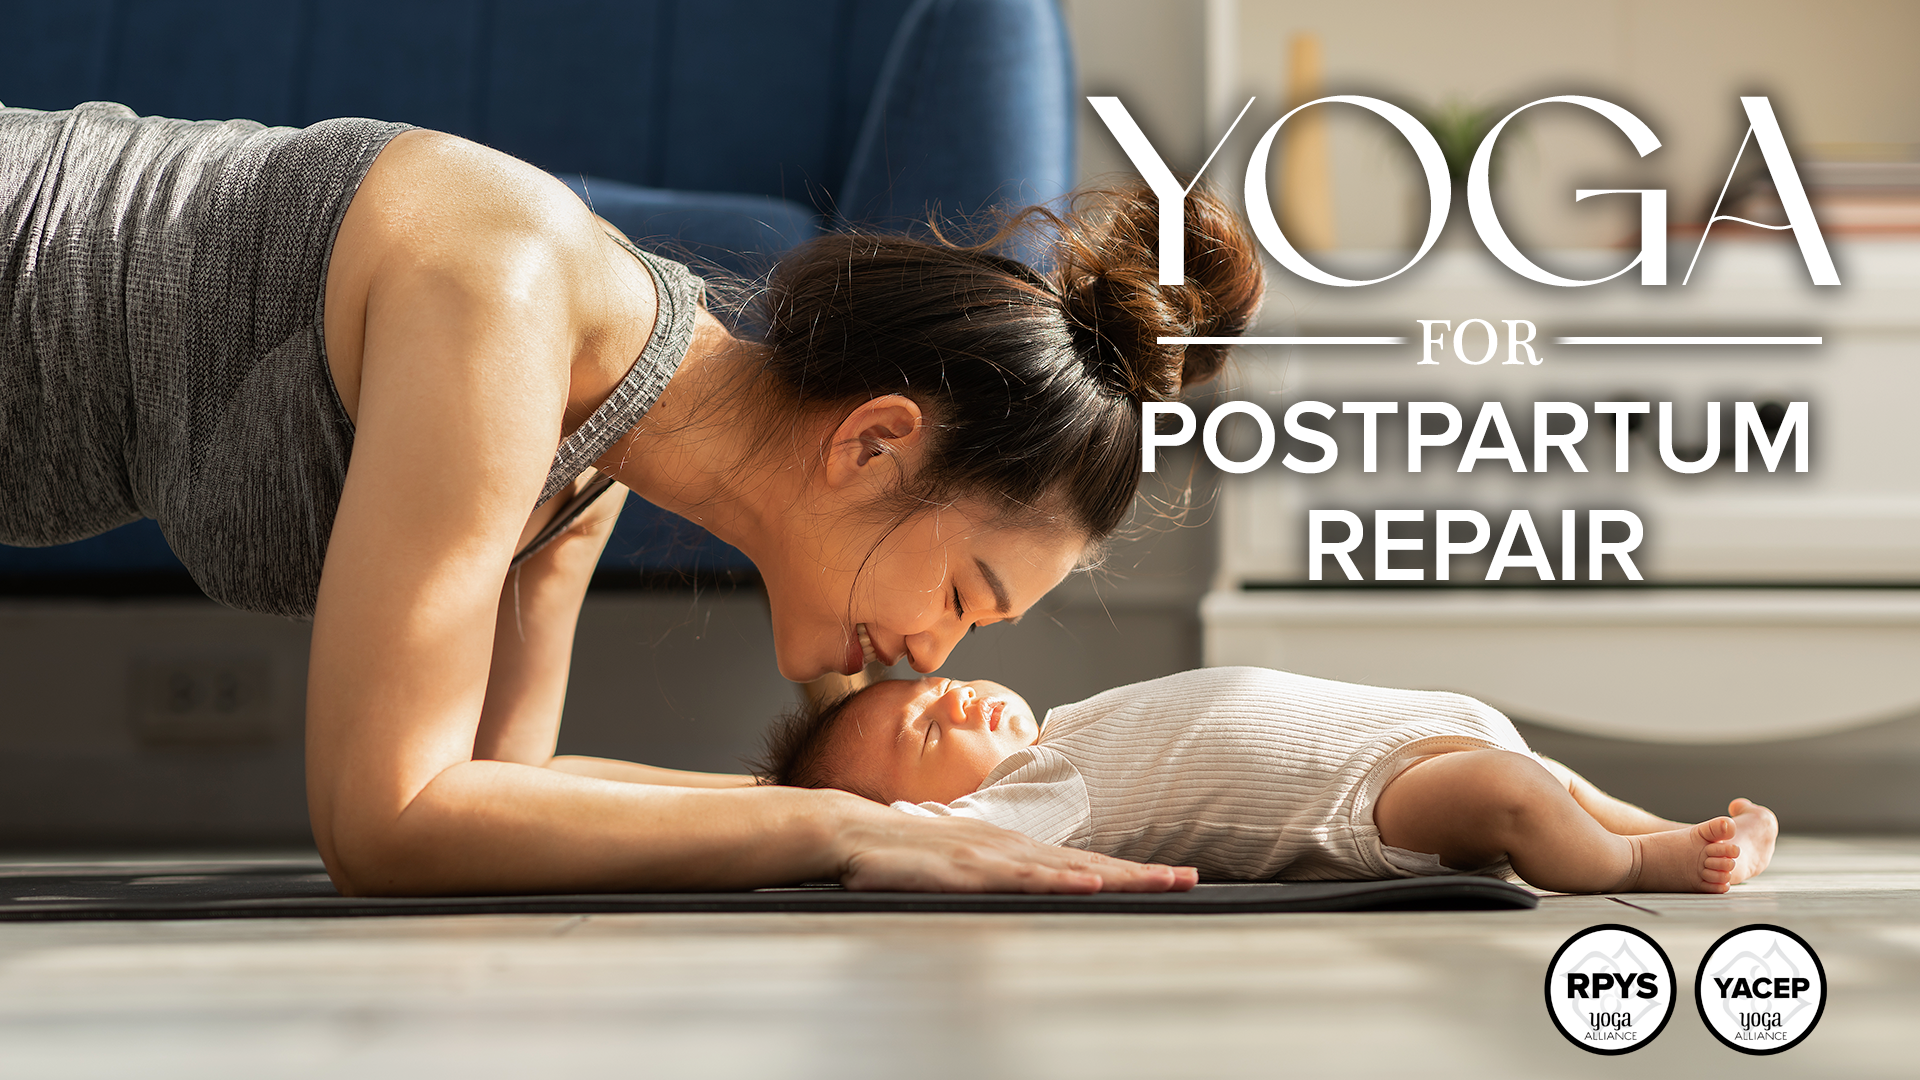 Yoga for Postpartum Repair